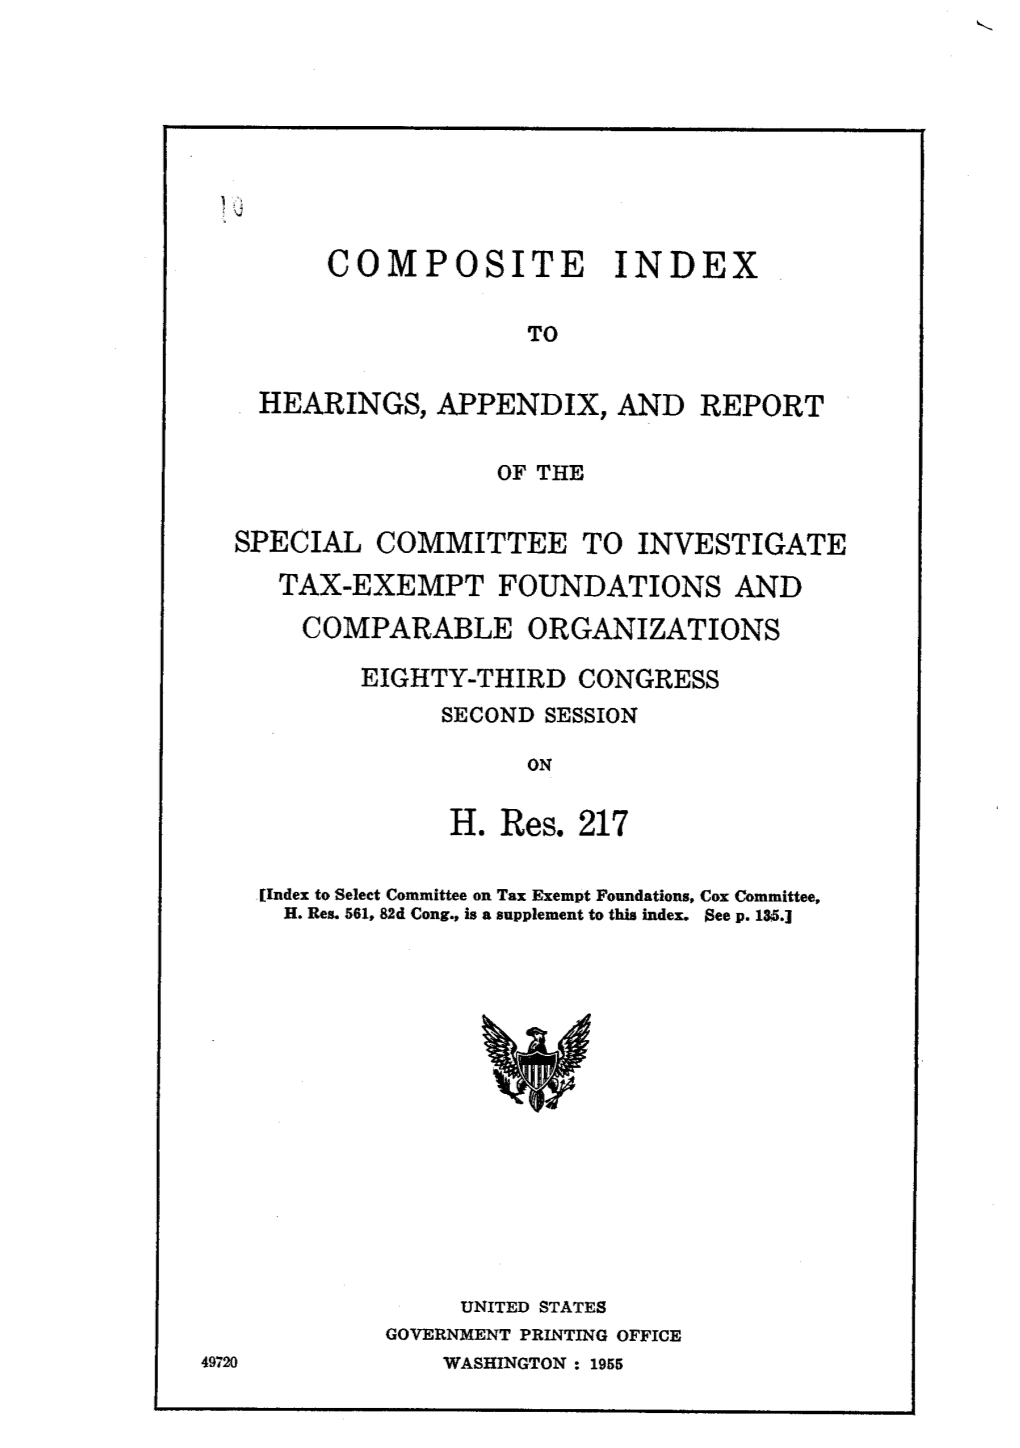 COMPOSITE INDEX H. Res